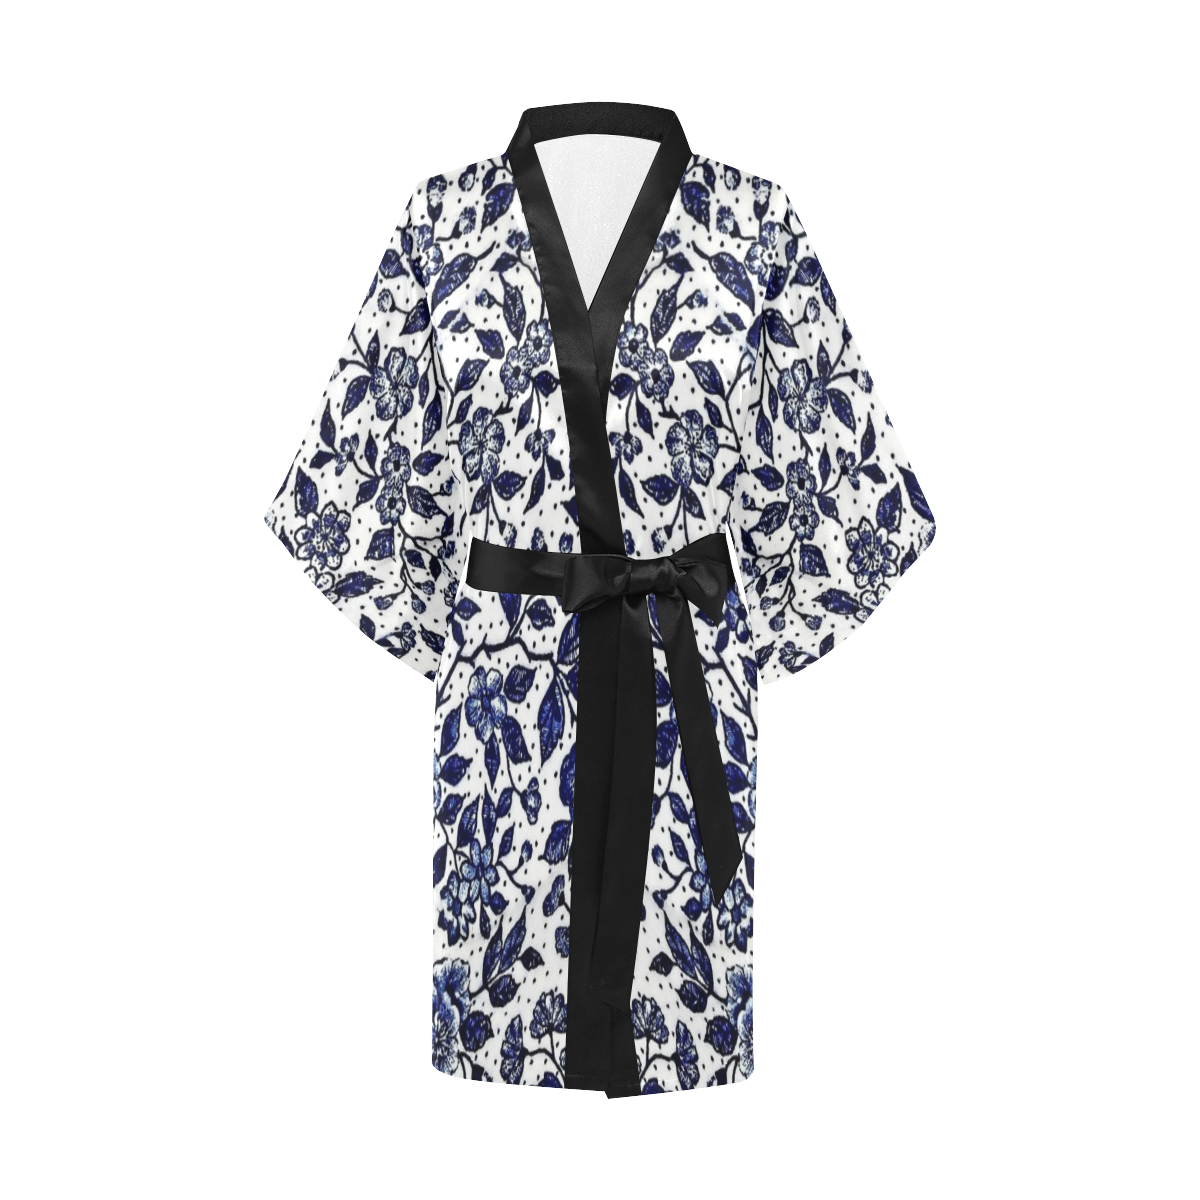 Roses Kimono Robe